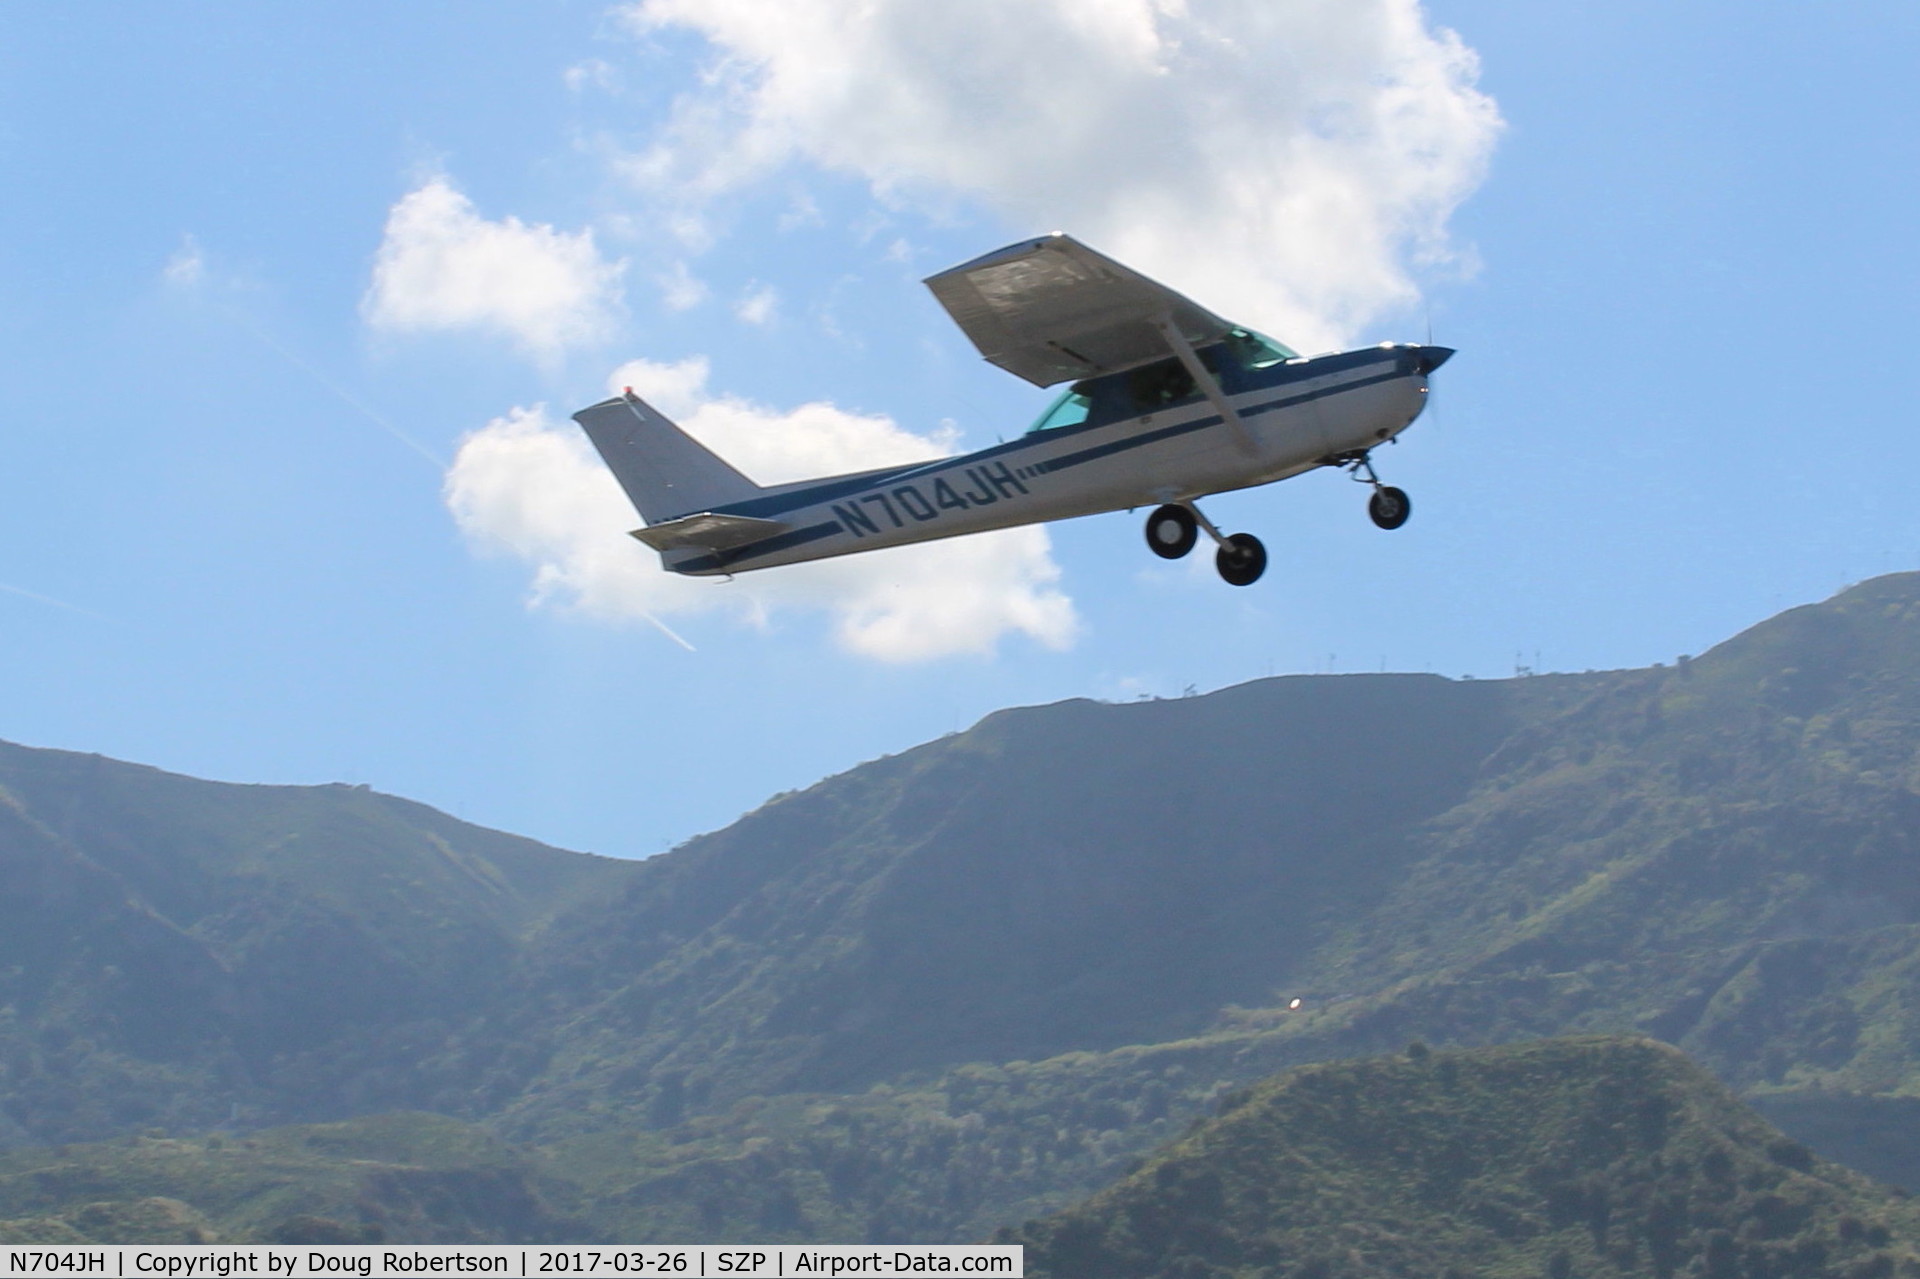 N704JH, 1976 Cessna 150M C/N 15078644, 1976 Cessna 150M, Continental O-200 100 Hp, takeoff climb Rwy 22